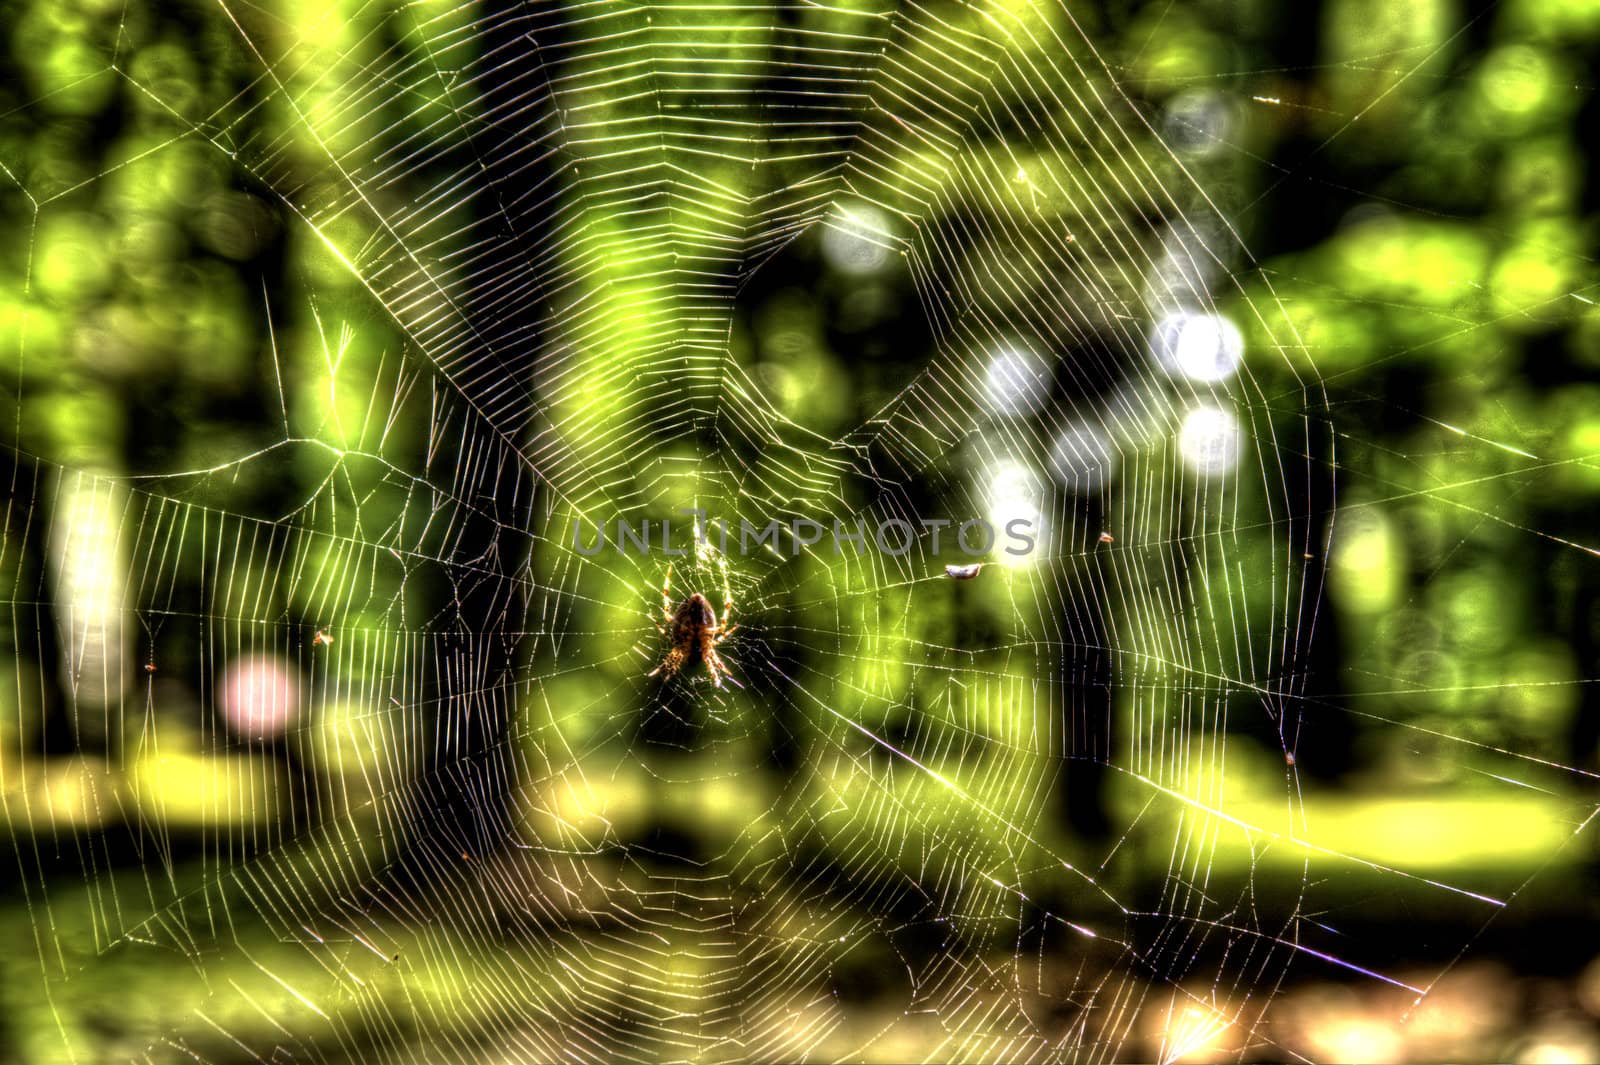 This photo present small spider on spiderweb HDRI.